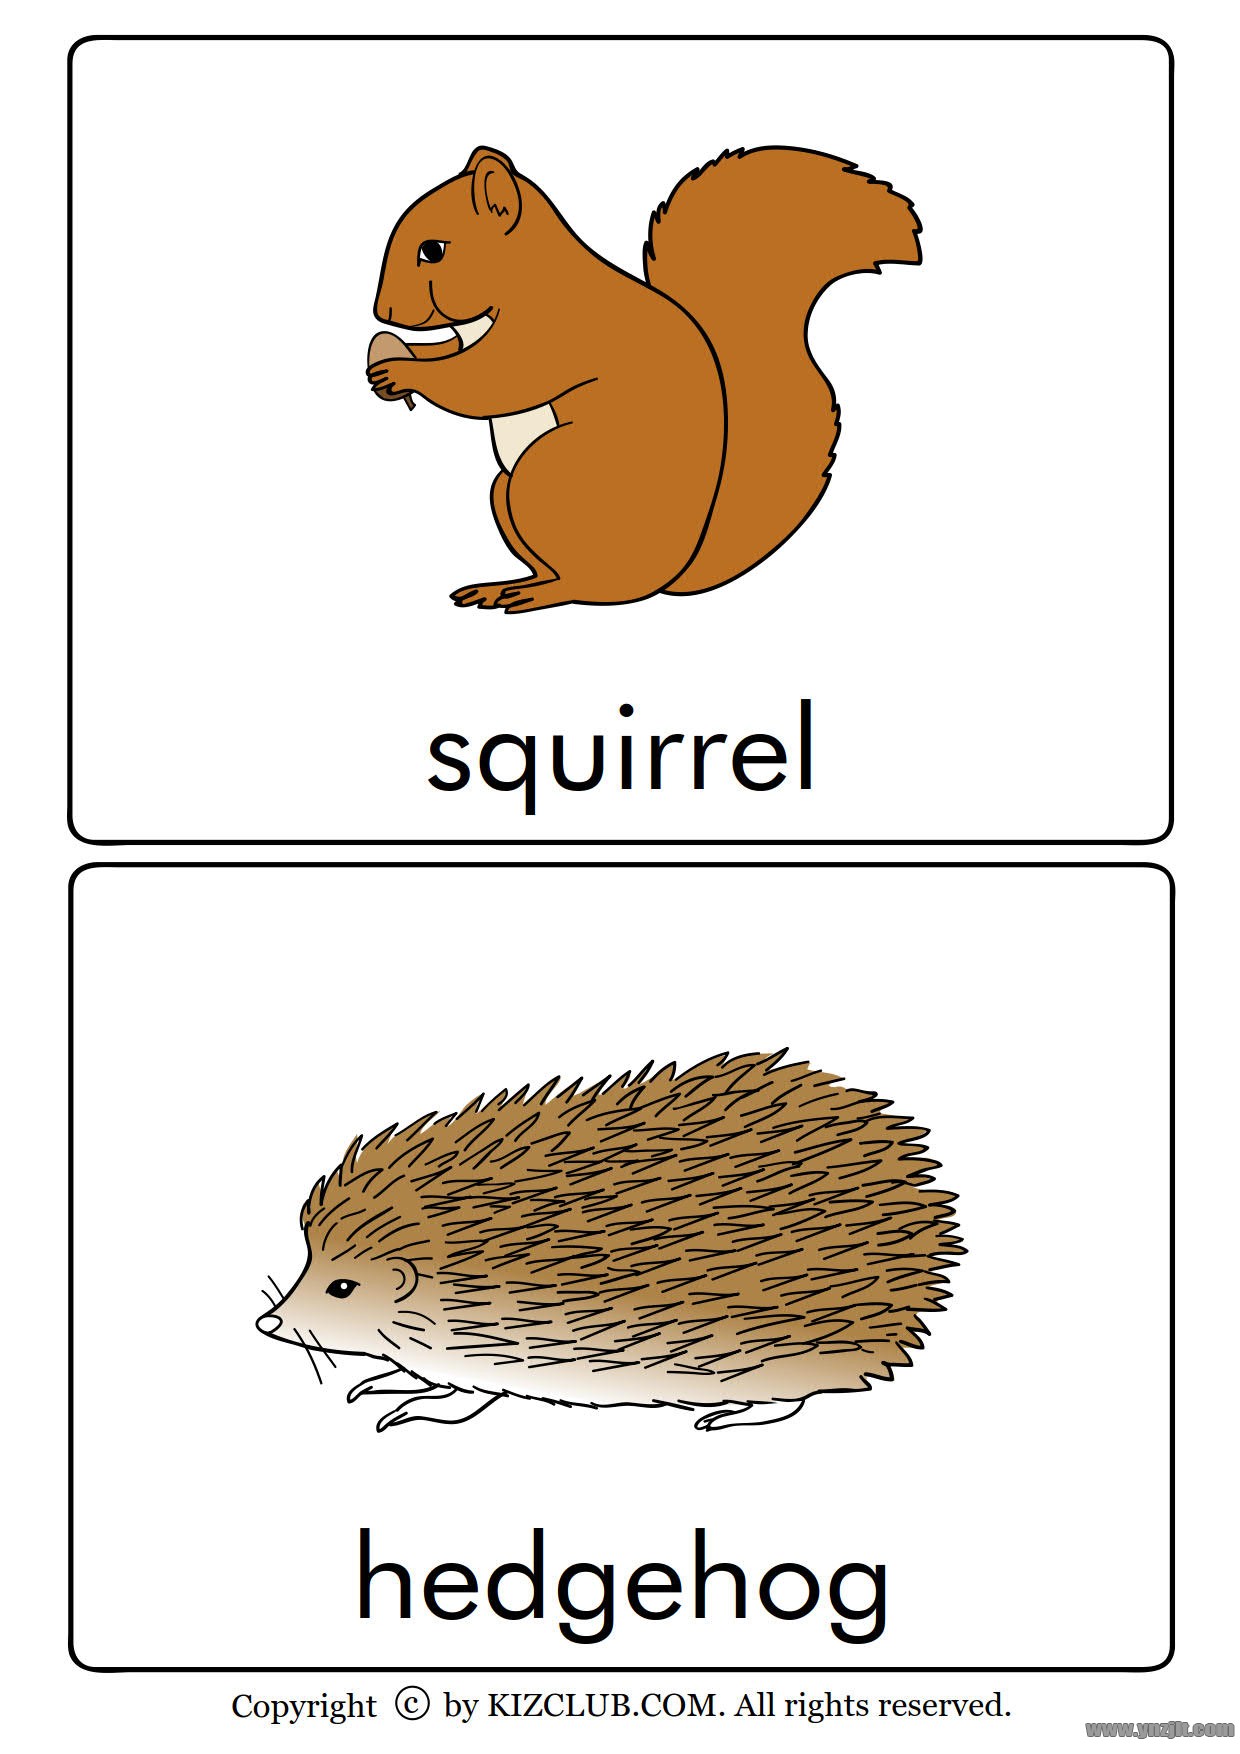 全套动物英文单词卡片高清版可打印适合孩子英语启蒙学习的有趣卡片